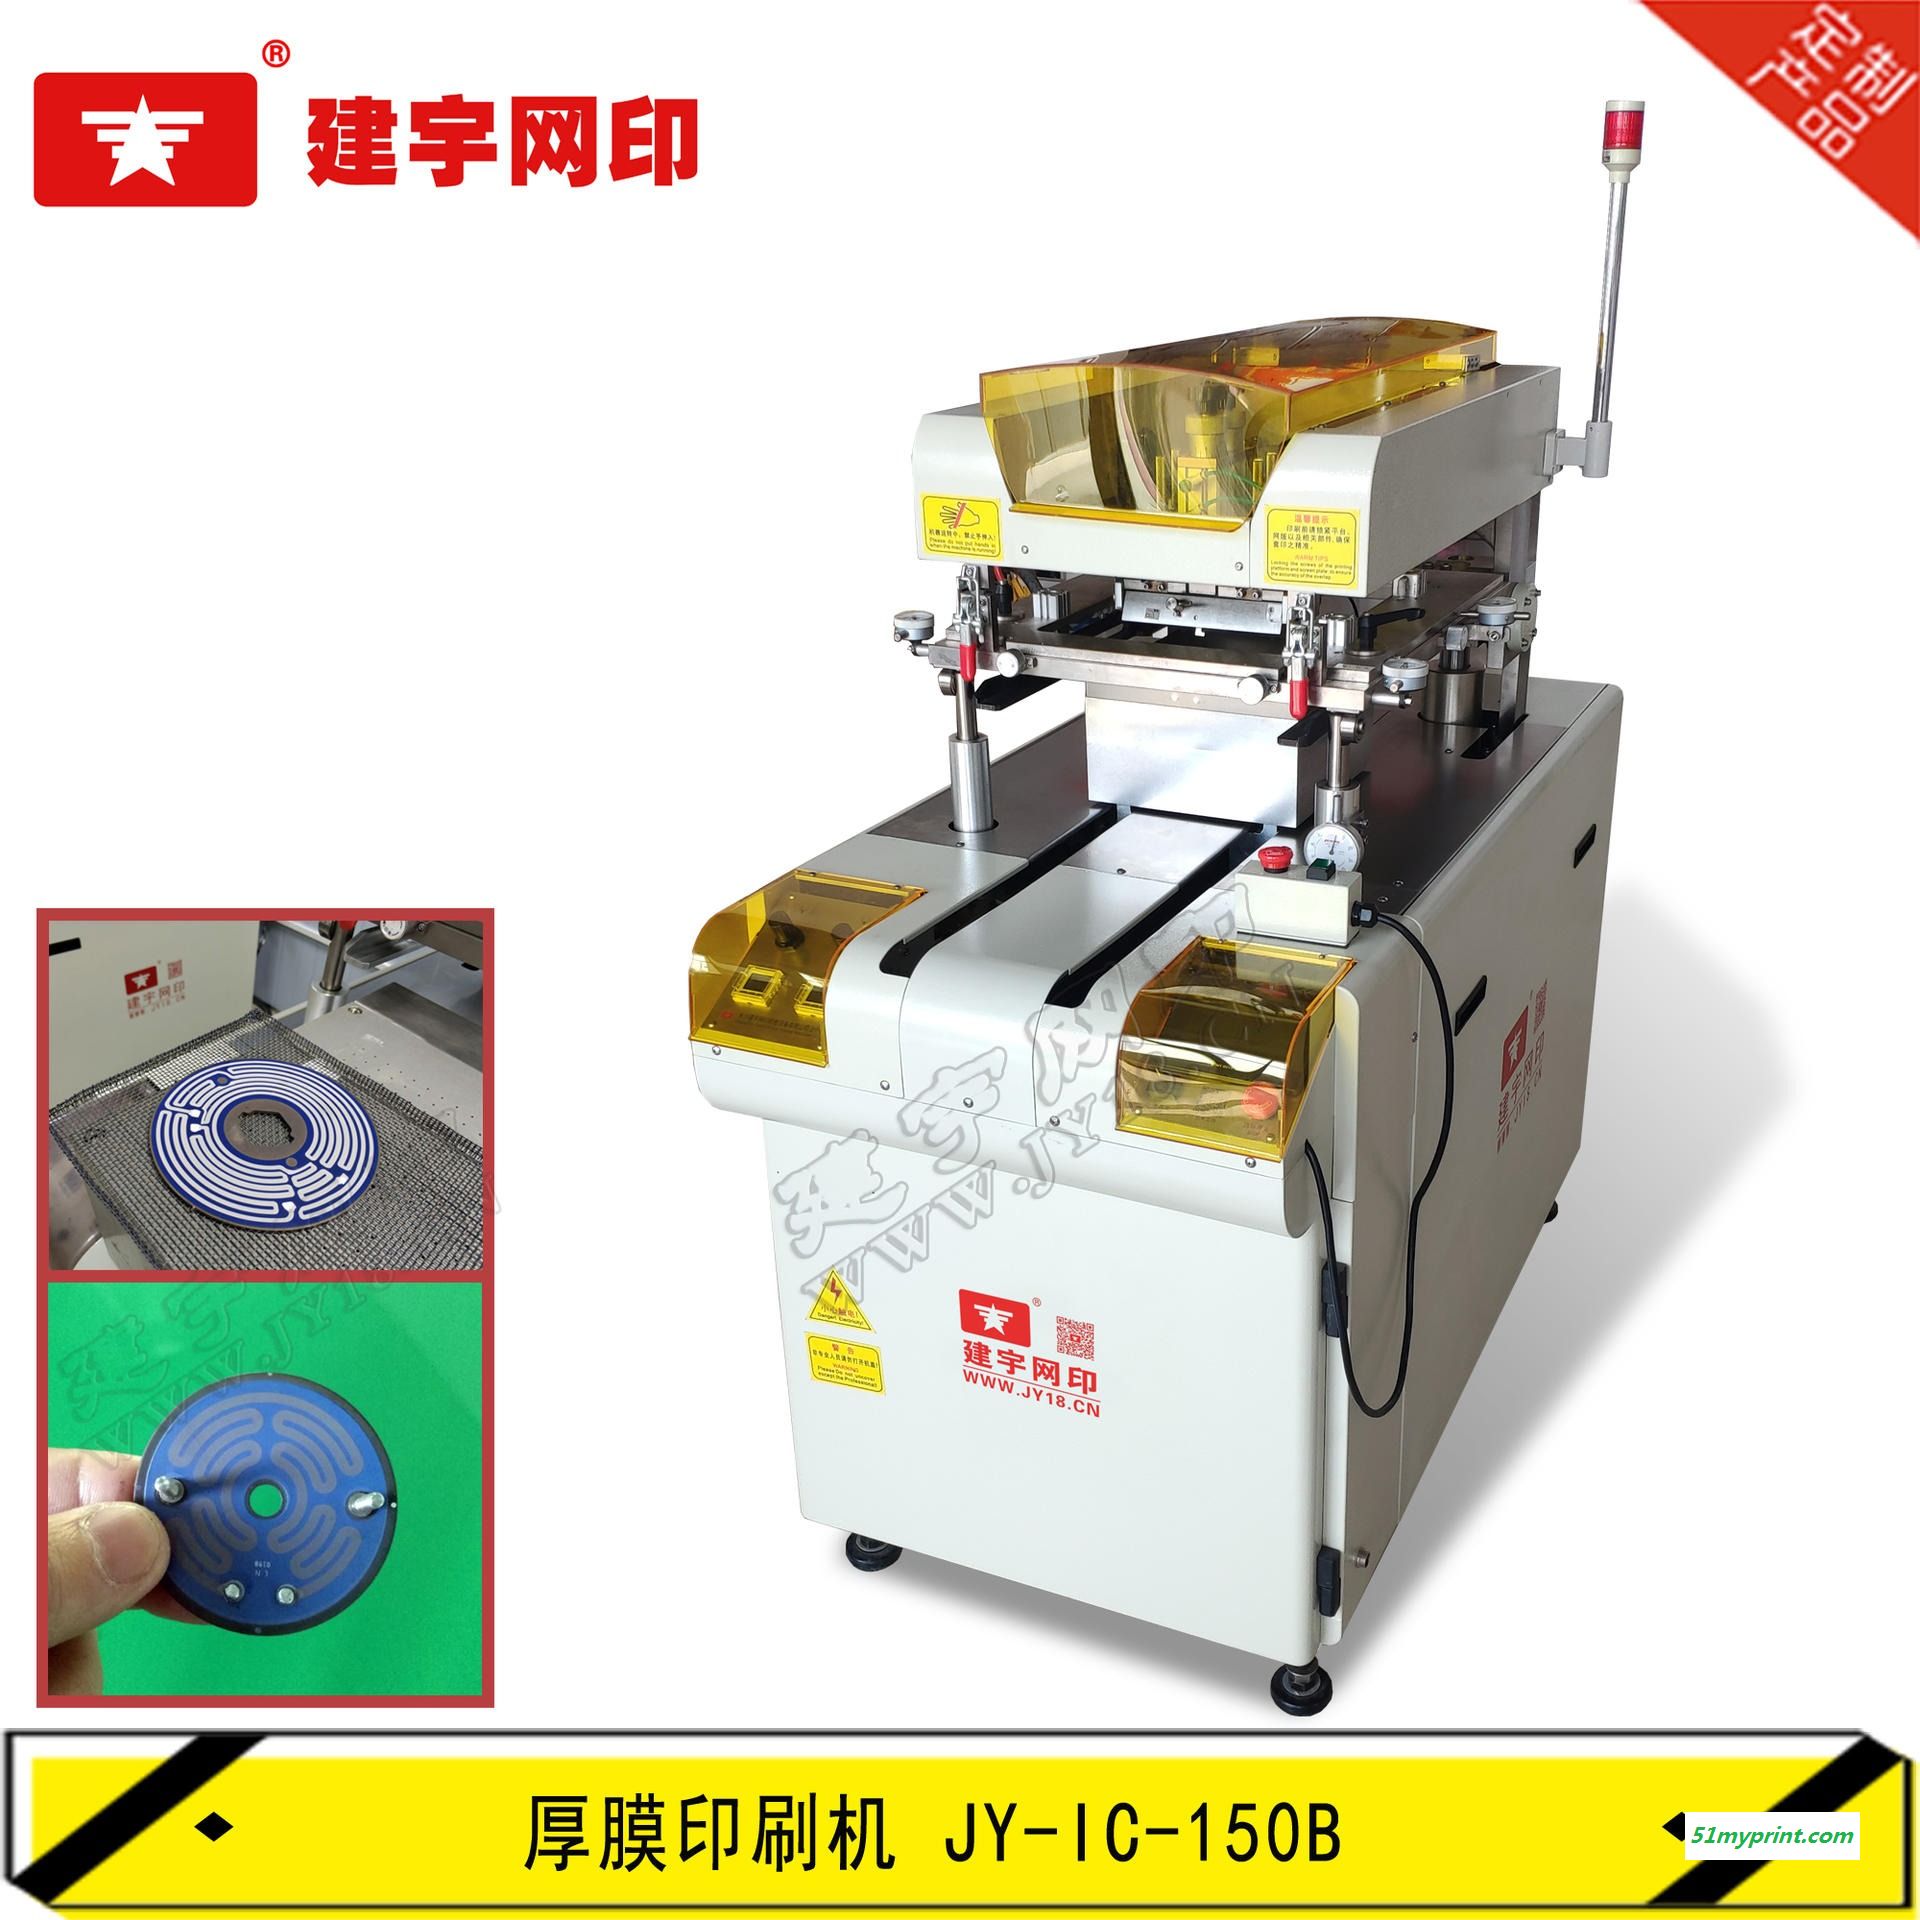 建宇网印 厂家供应电热水壶发热盘印刷机 可用于咖啡机发热片厚膜印刷